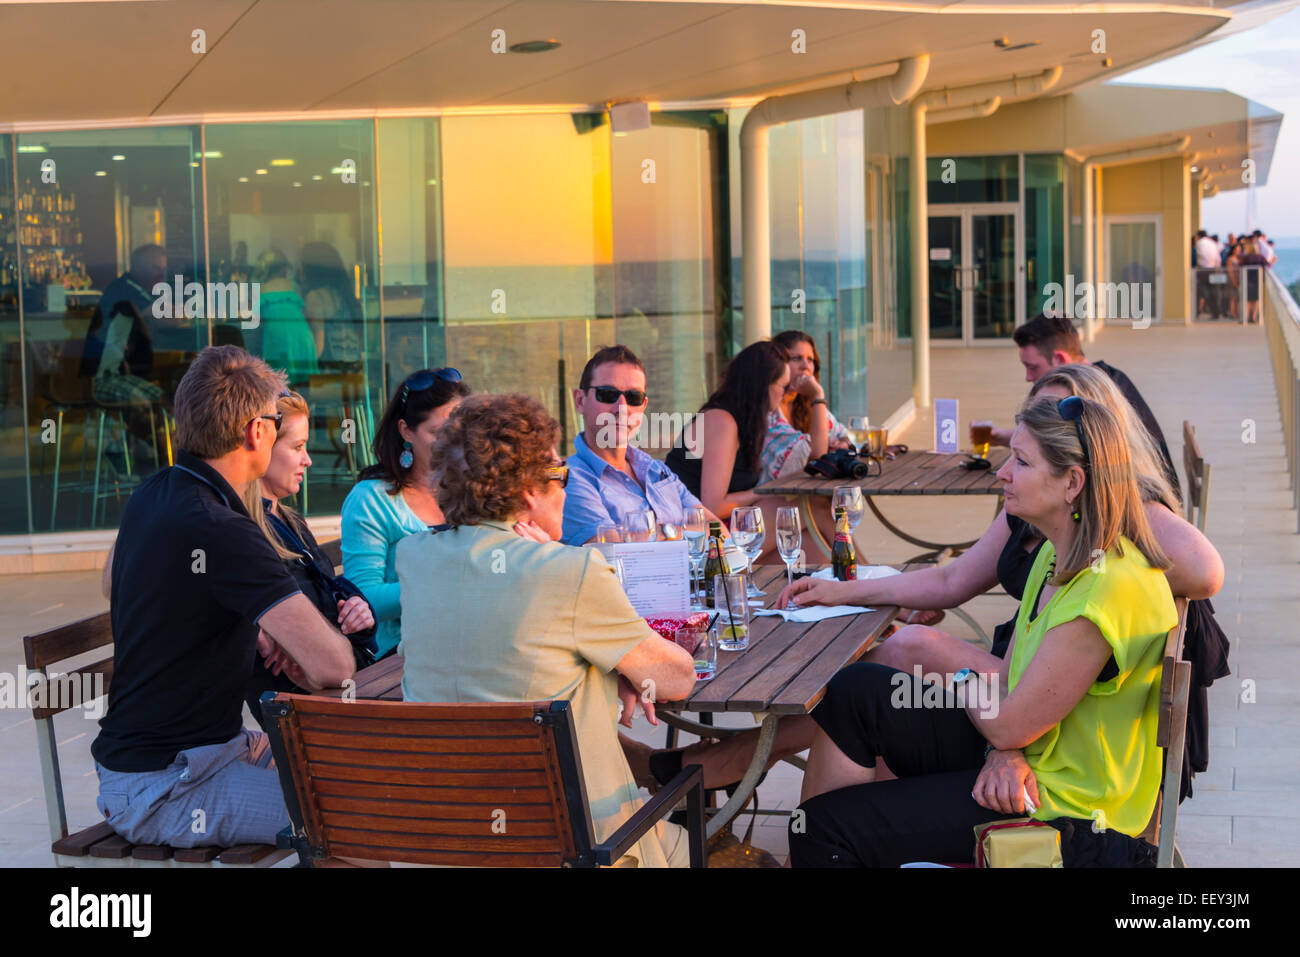 Riunione di famiglia sociale giovani adulti con la madre esterna di estate impostazione mangiare bere celebrando godendo di una serata estiva sunset Foto Stock